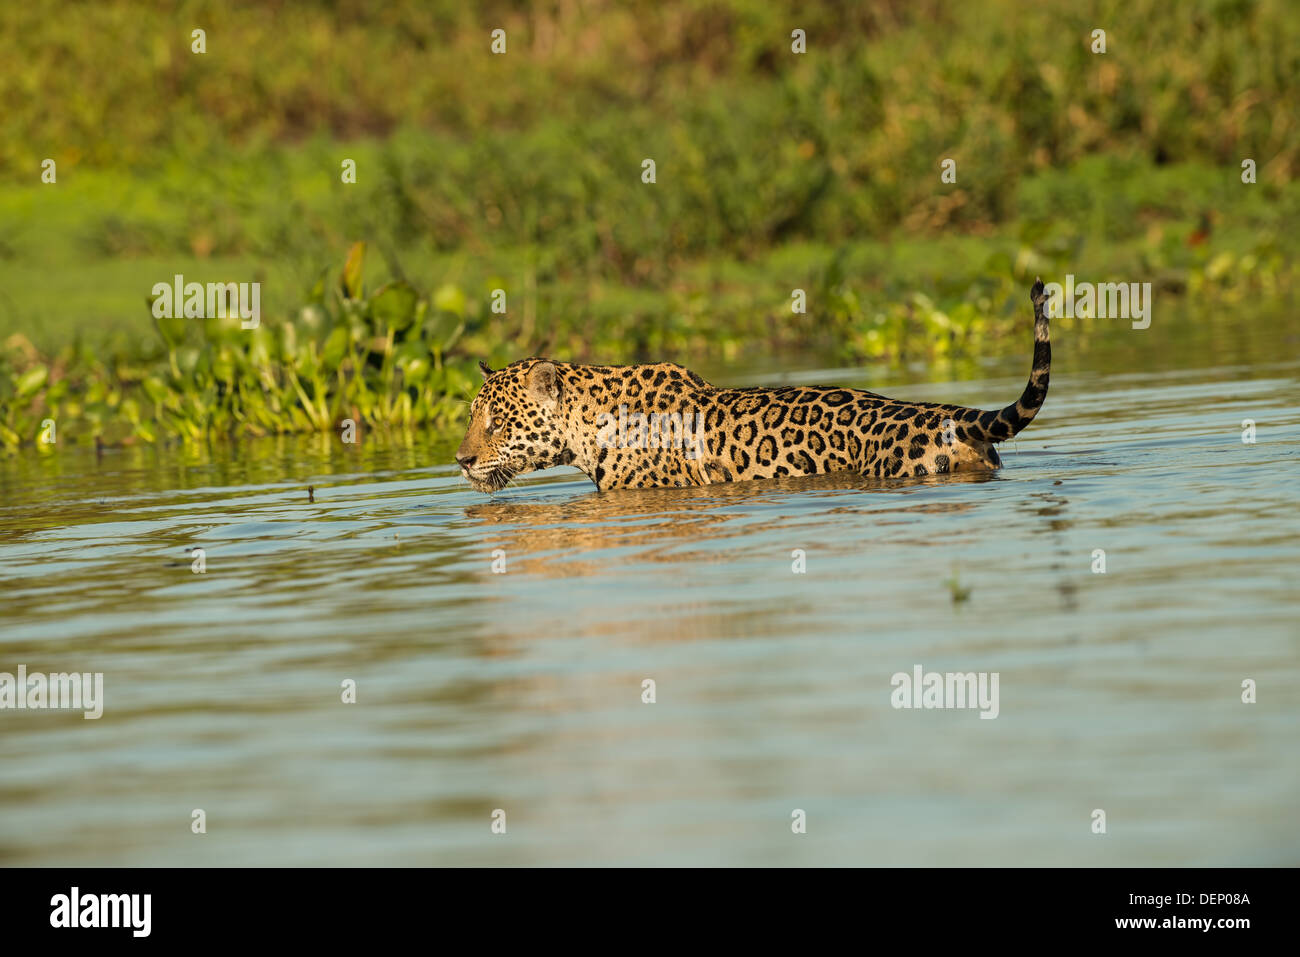 Foto di stock di una Jaguar nuotare nel fiume, Pantanal, Brasile Foto Stock